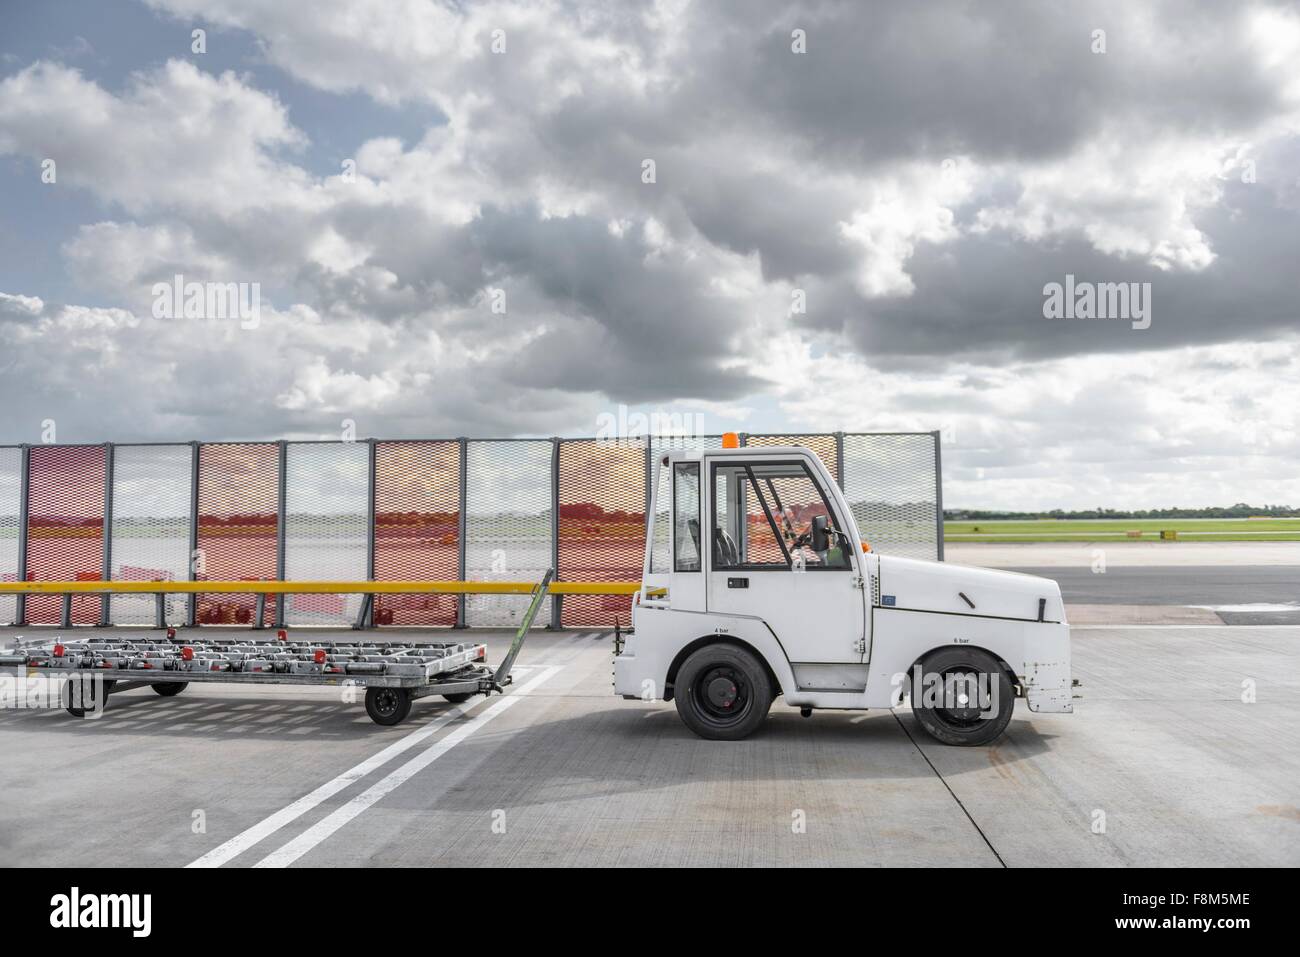 Small baggage handling tug at airport Stock Photo